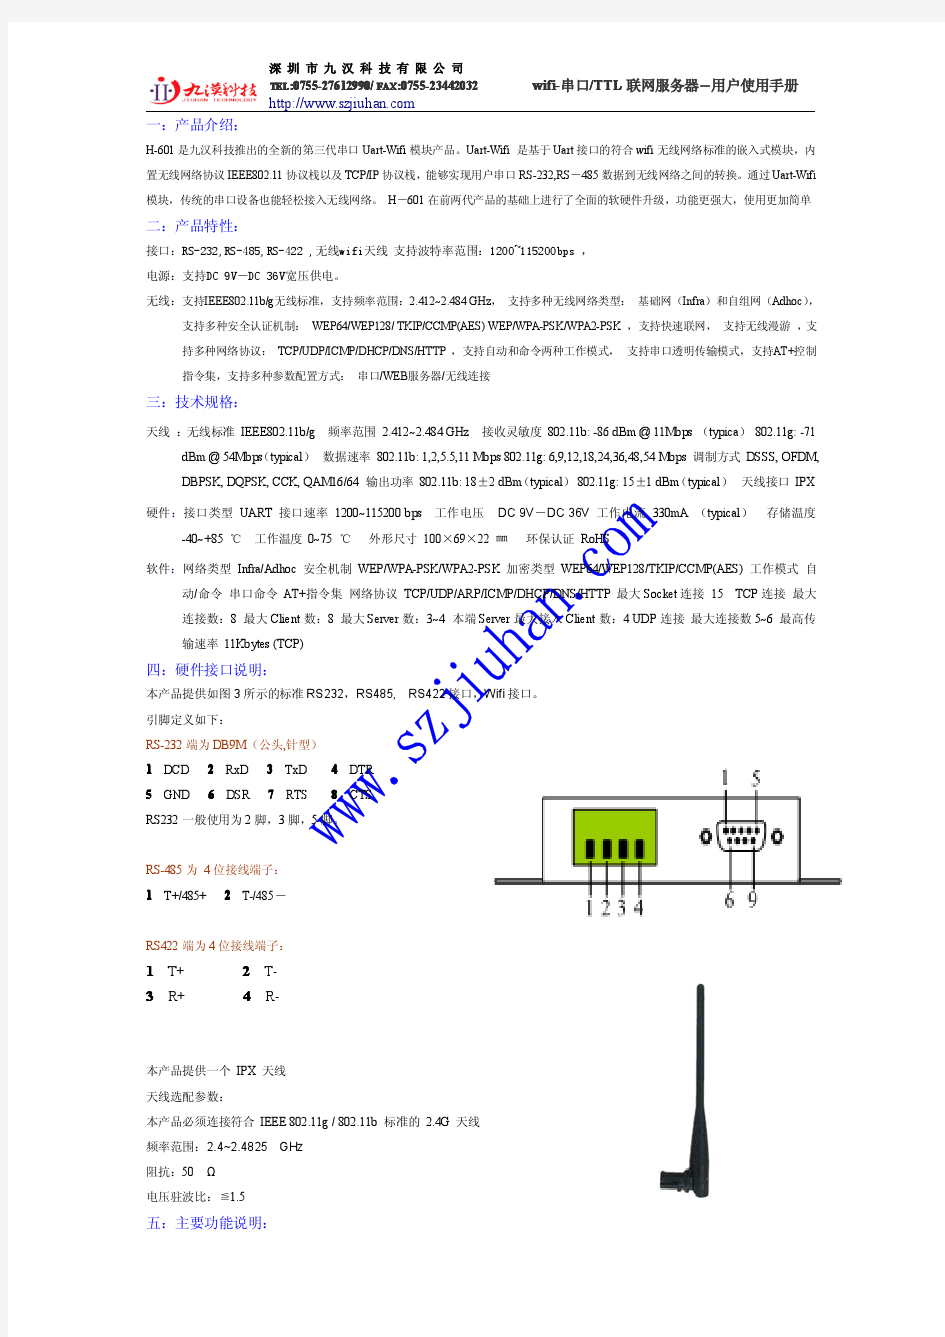 WIFI无线串口服务器H-601使用手册